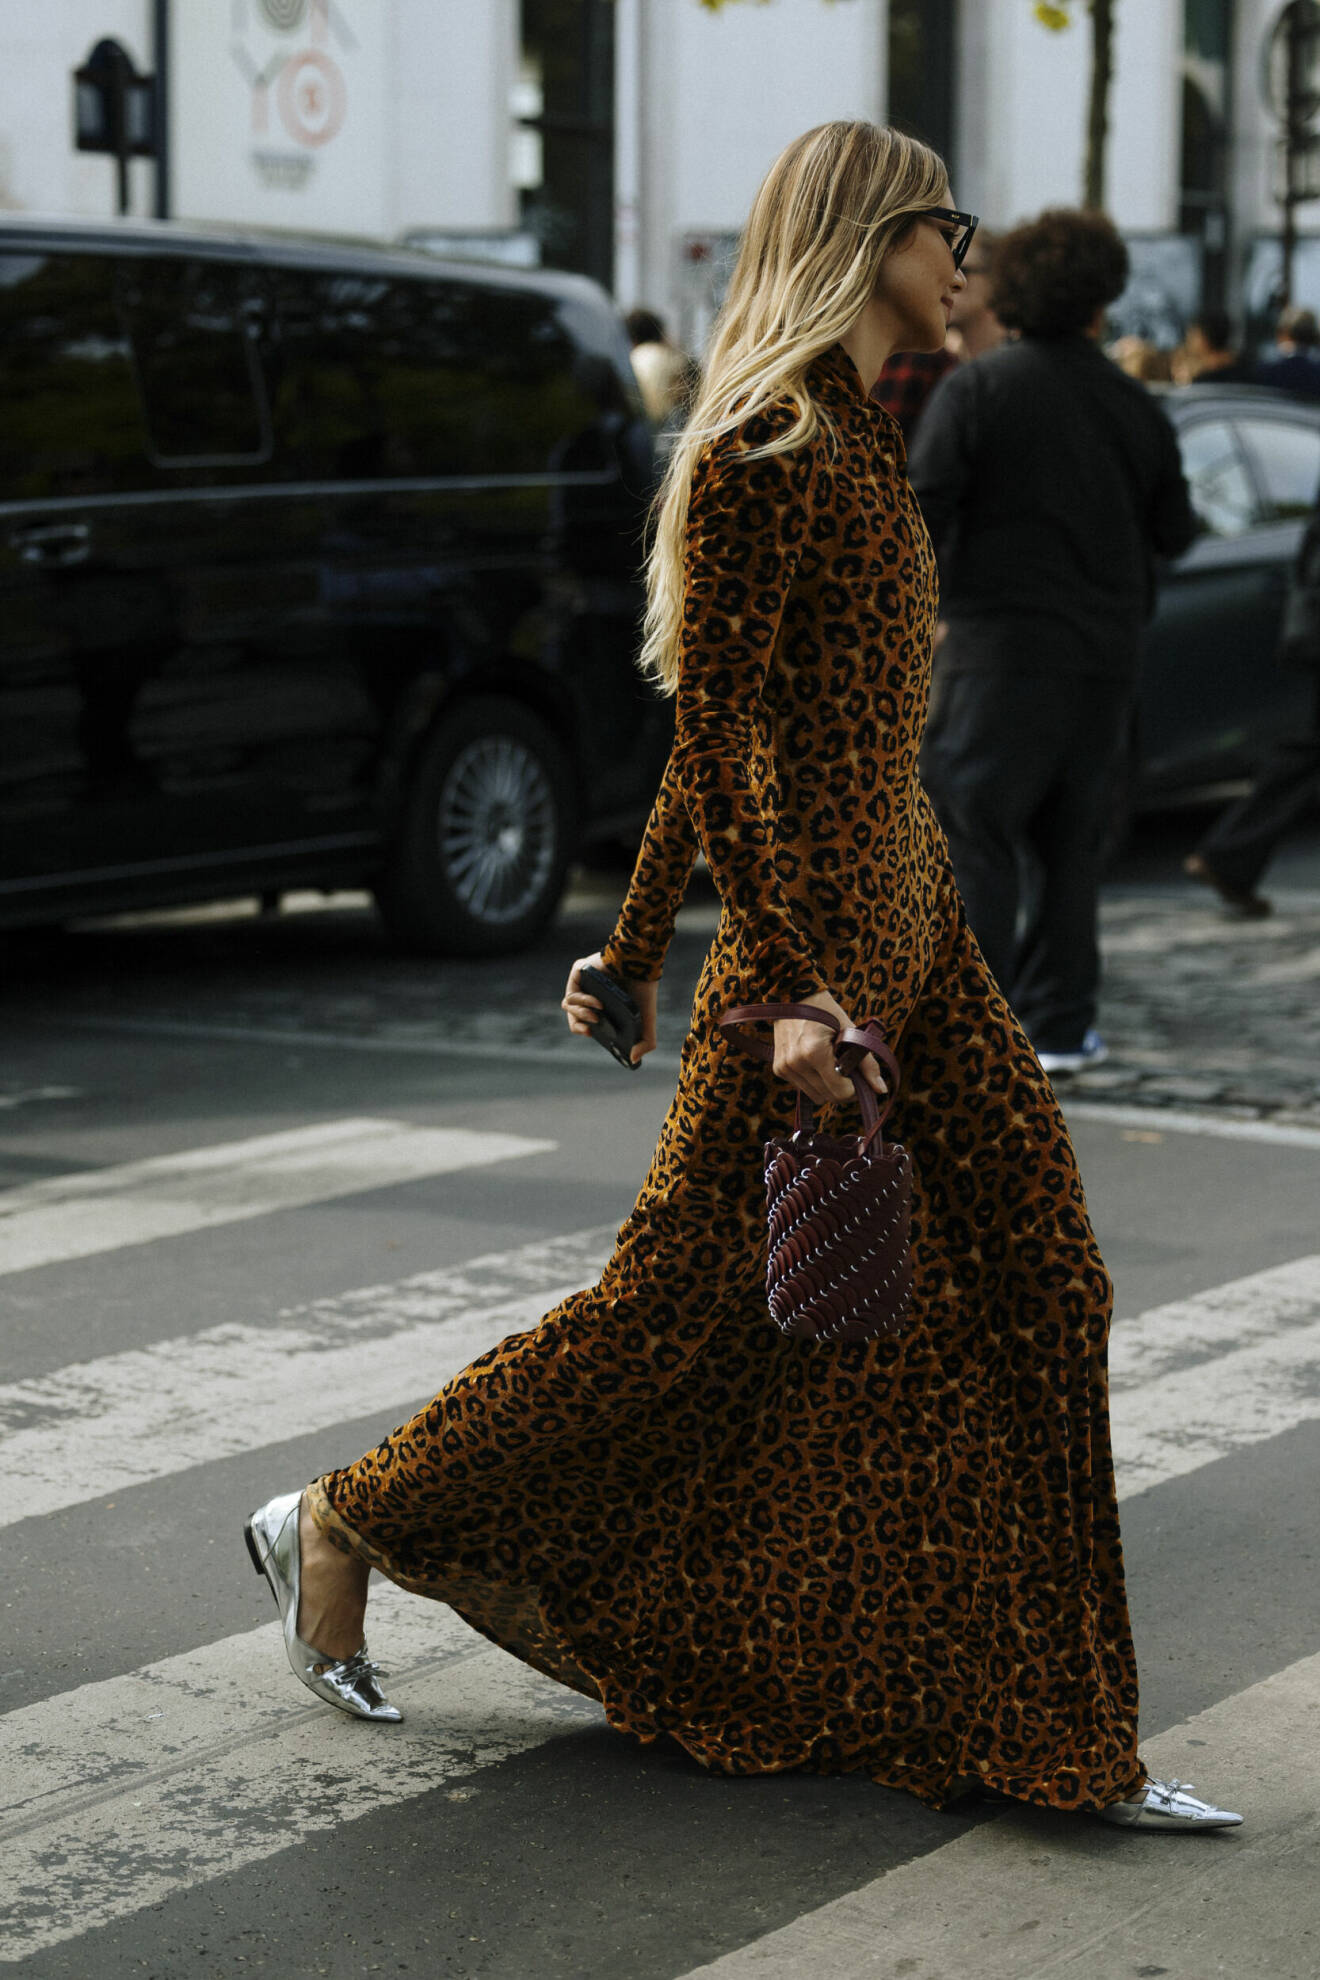 Leopardklänning på Paris gator under PFW.